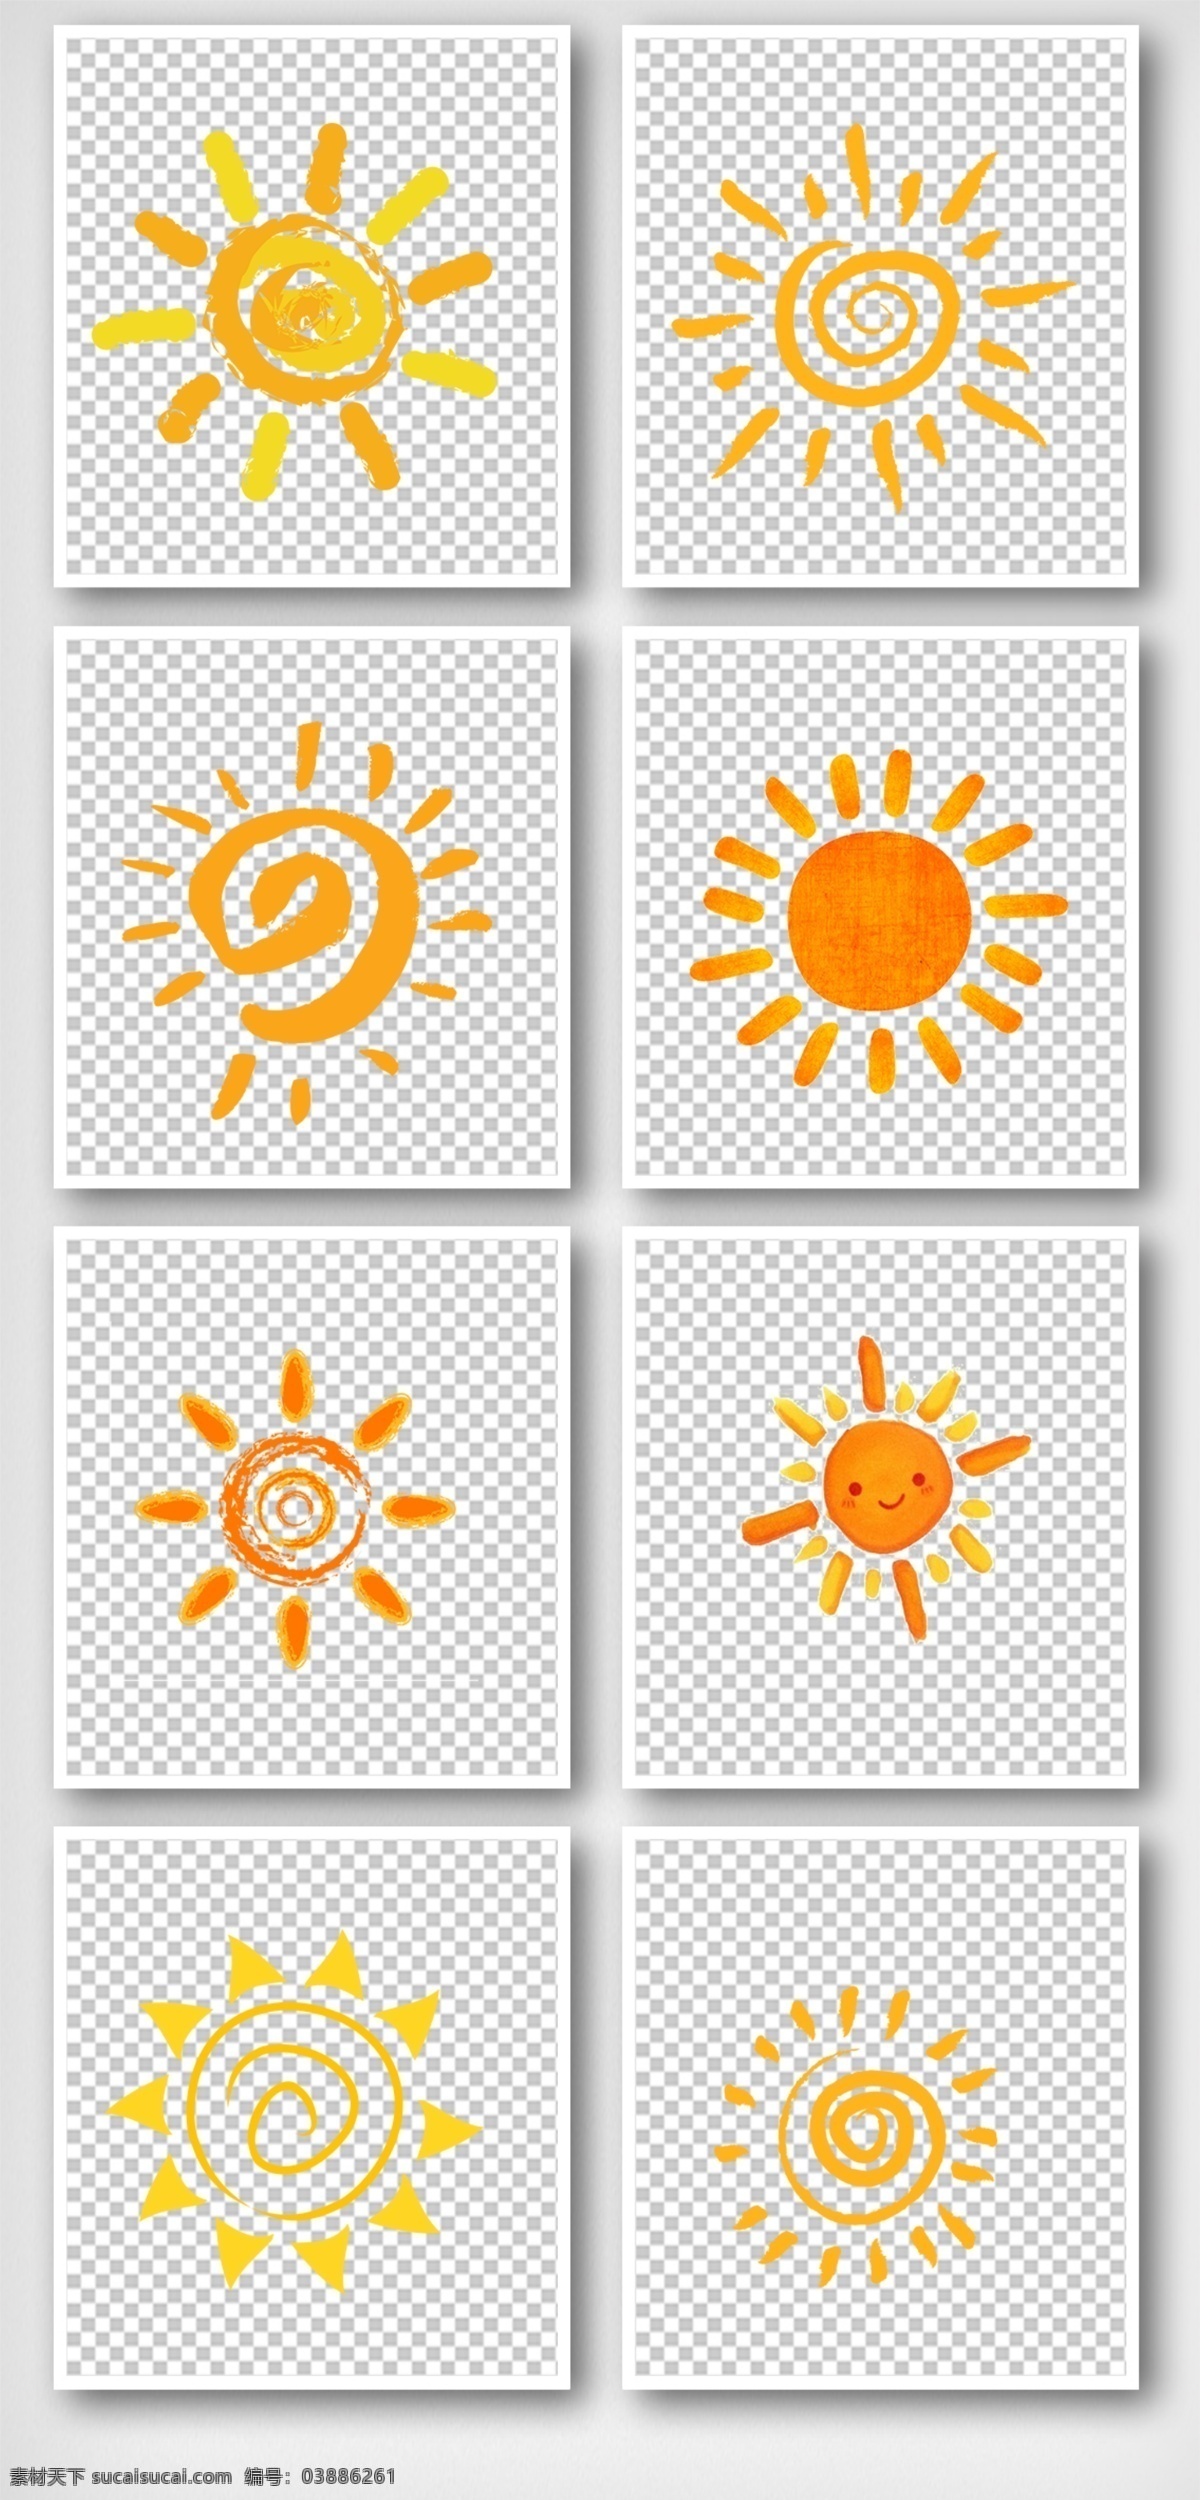 手绘太阳 中国风 免费素材 免费模版 平面模版 元素模版 手绘卡通 卡通手绘 卡通元素 卡通太阳 太阳卡通 png卡通